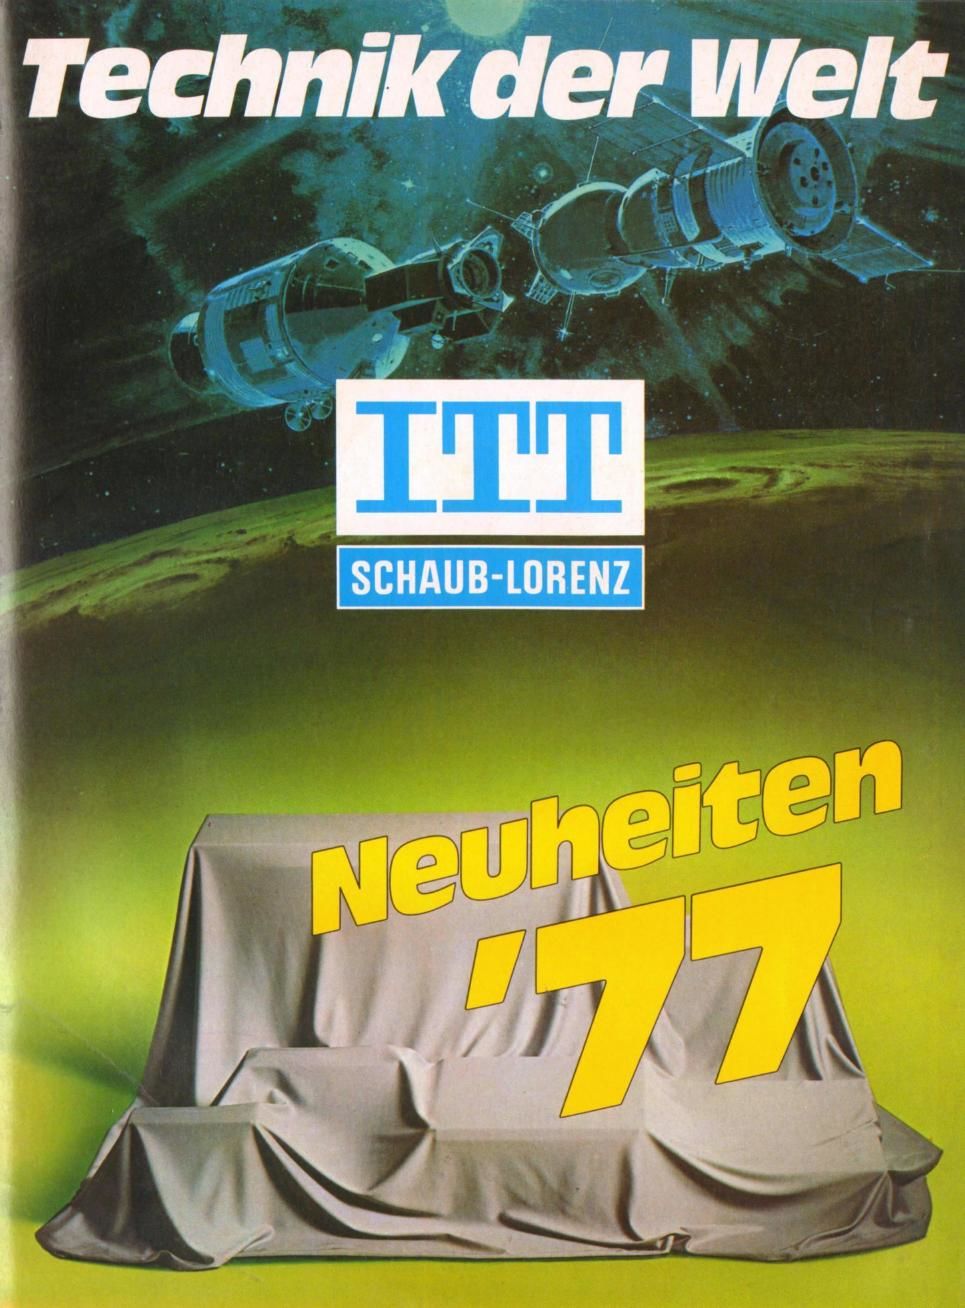 ITT 1977 Neu